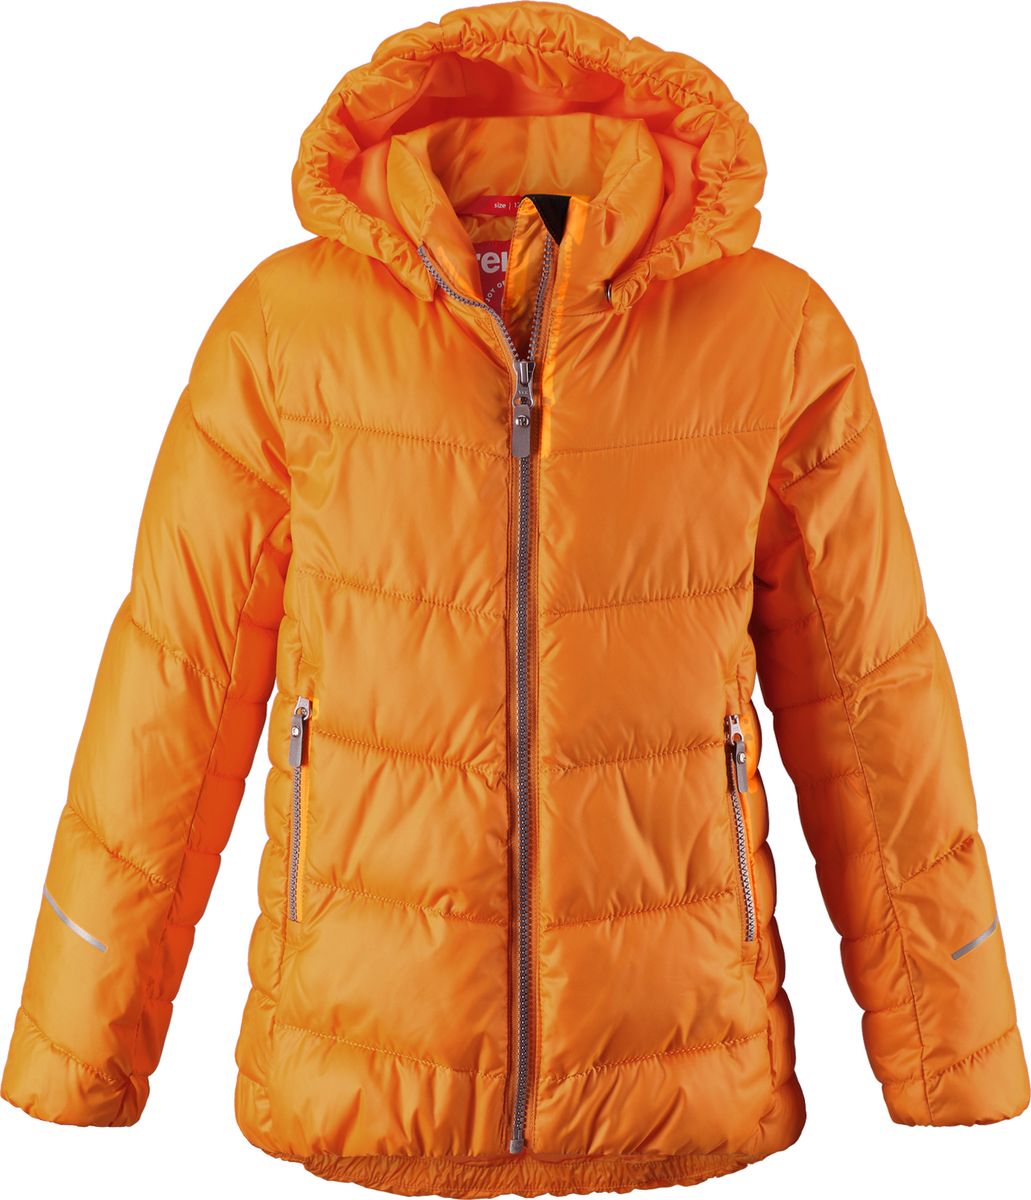 Куртка для девочки Reima Malla, цвет: оранжевый. 5313442440. Размер 164